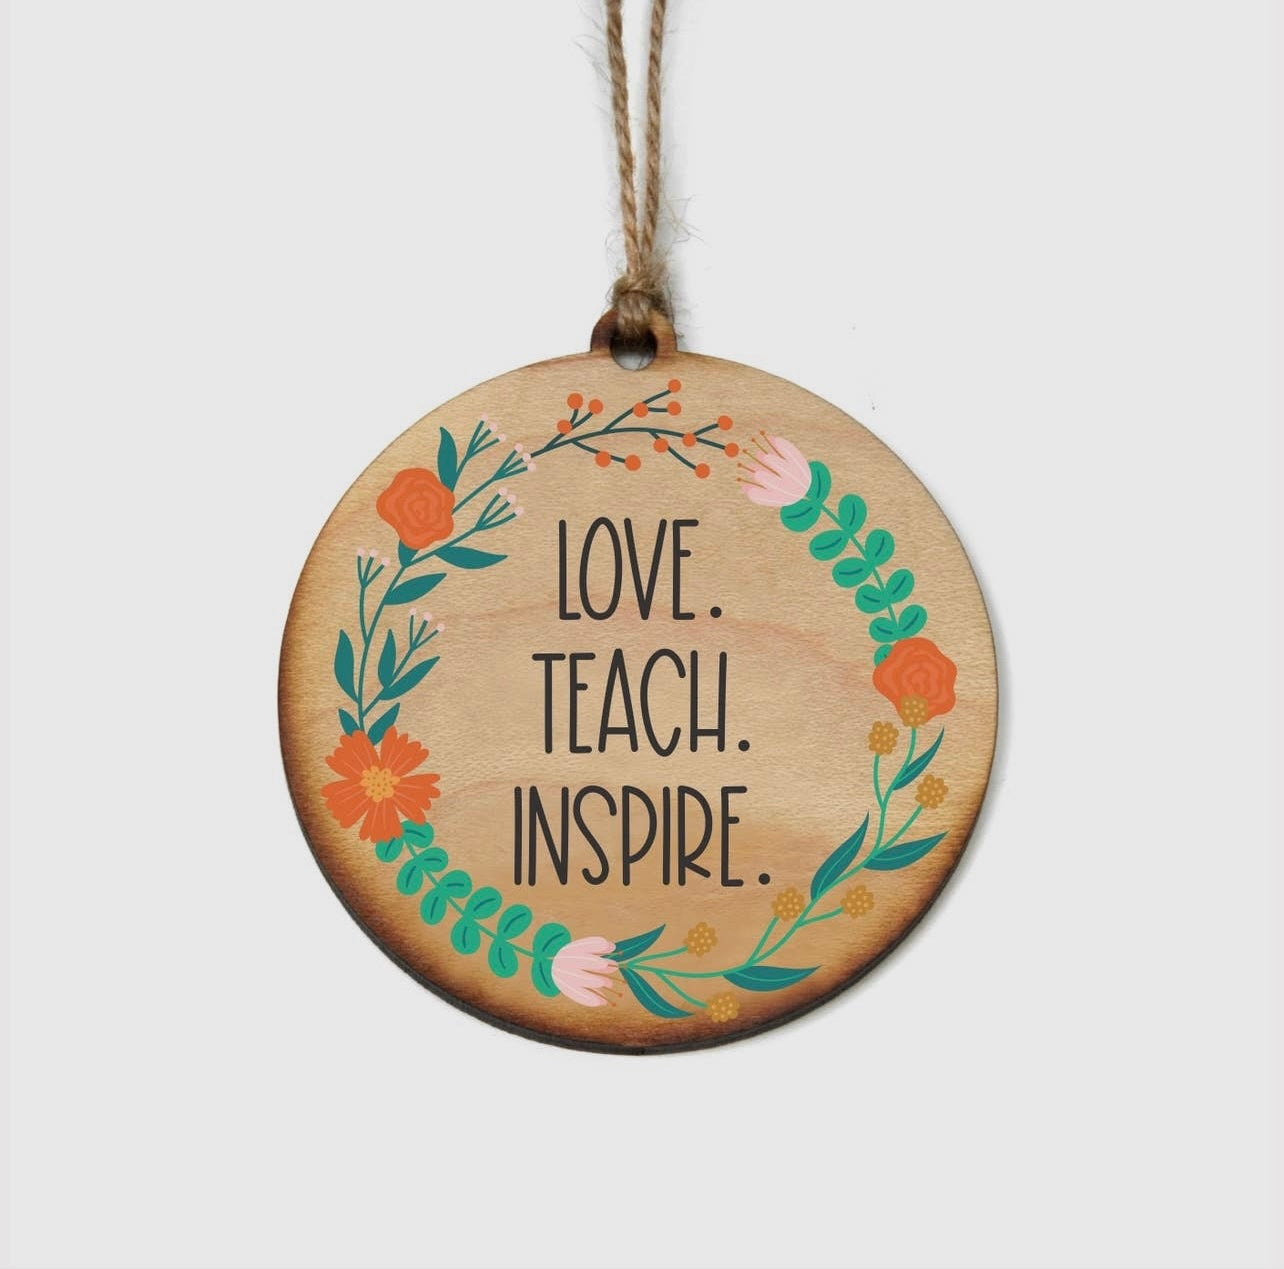 Love teach inspire teacher Christmas ornament